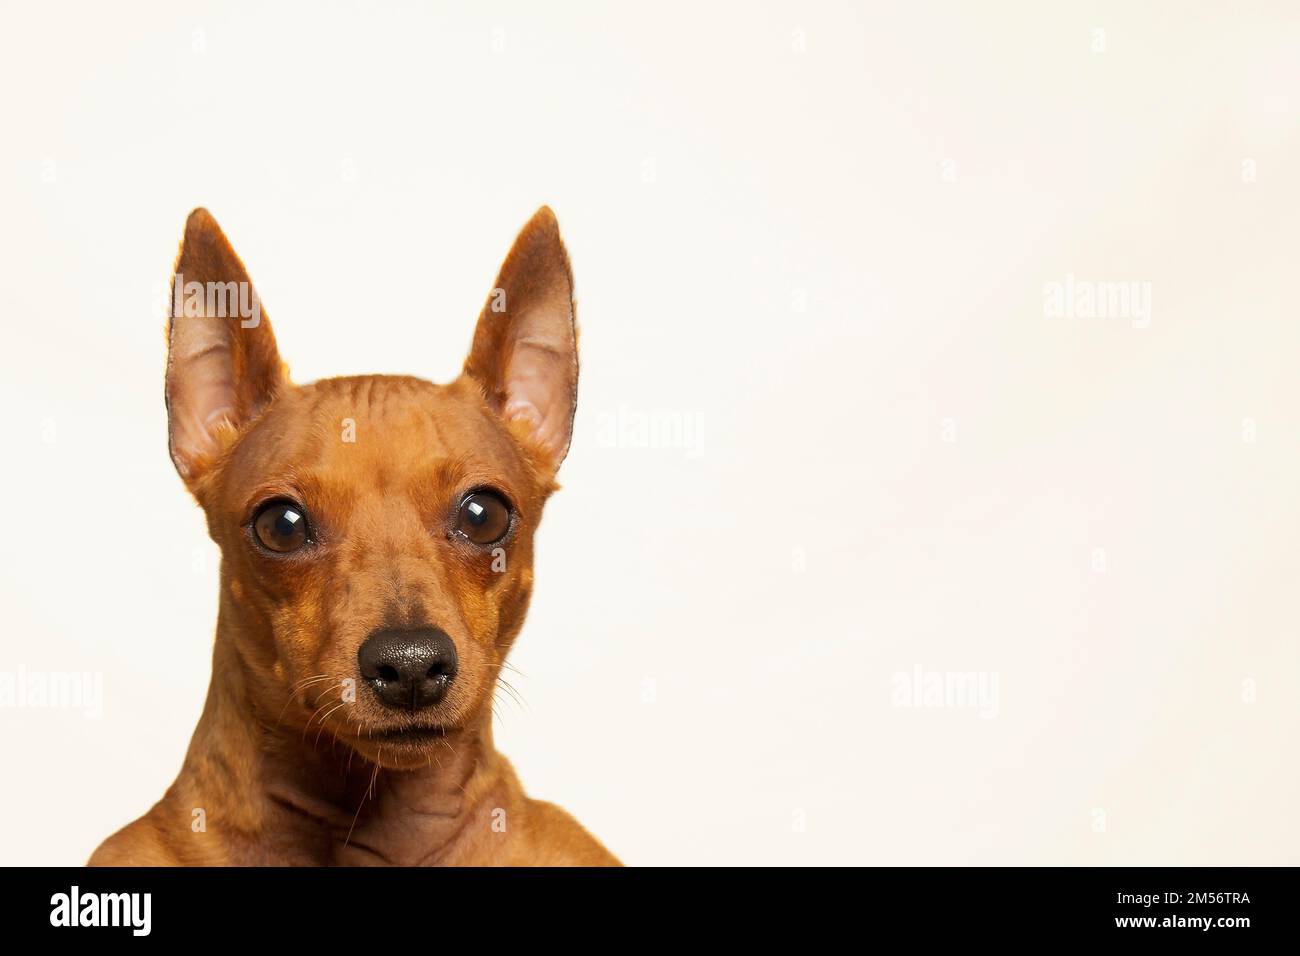 La museruola marrone del cane guarda nella telecamera su uno sfondo chiaro. Ritratto di un cane attento e focalizzato su sfondo bianco. Un animale domestico purosangue. Foto Stock